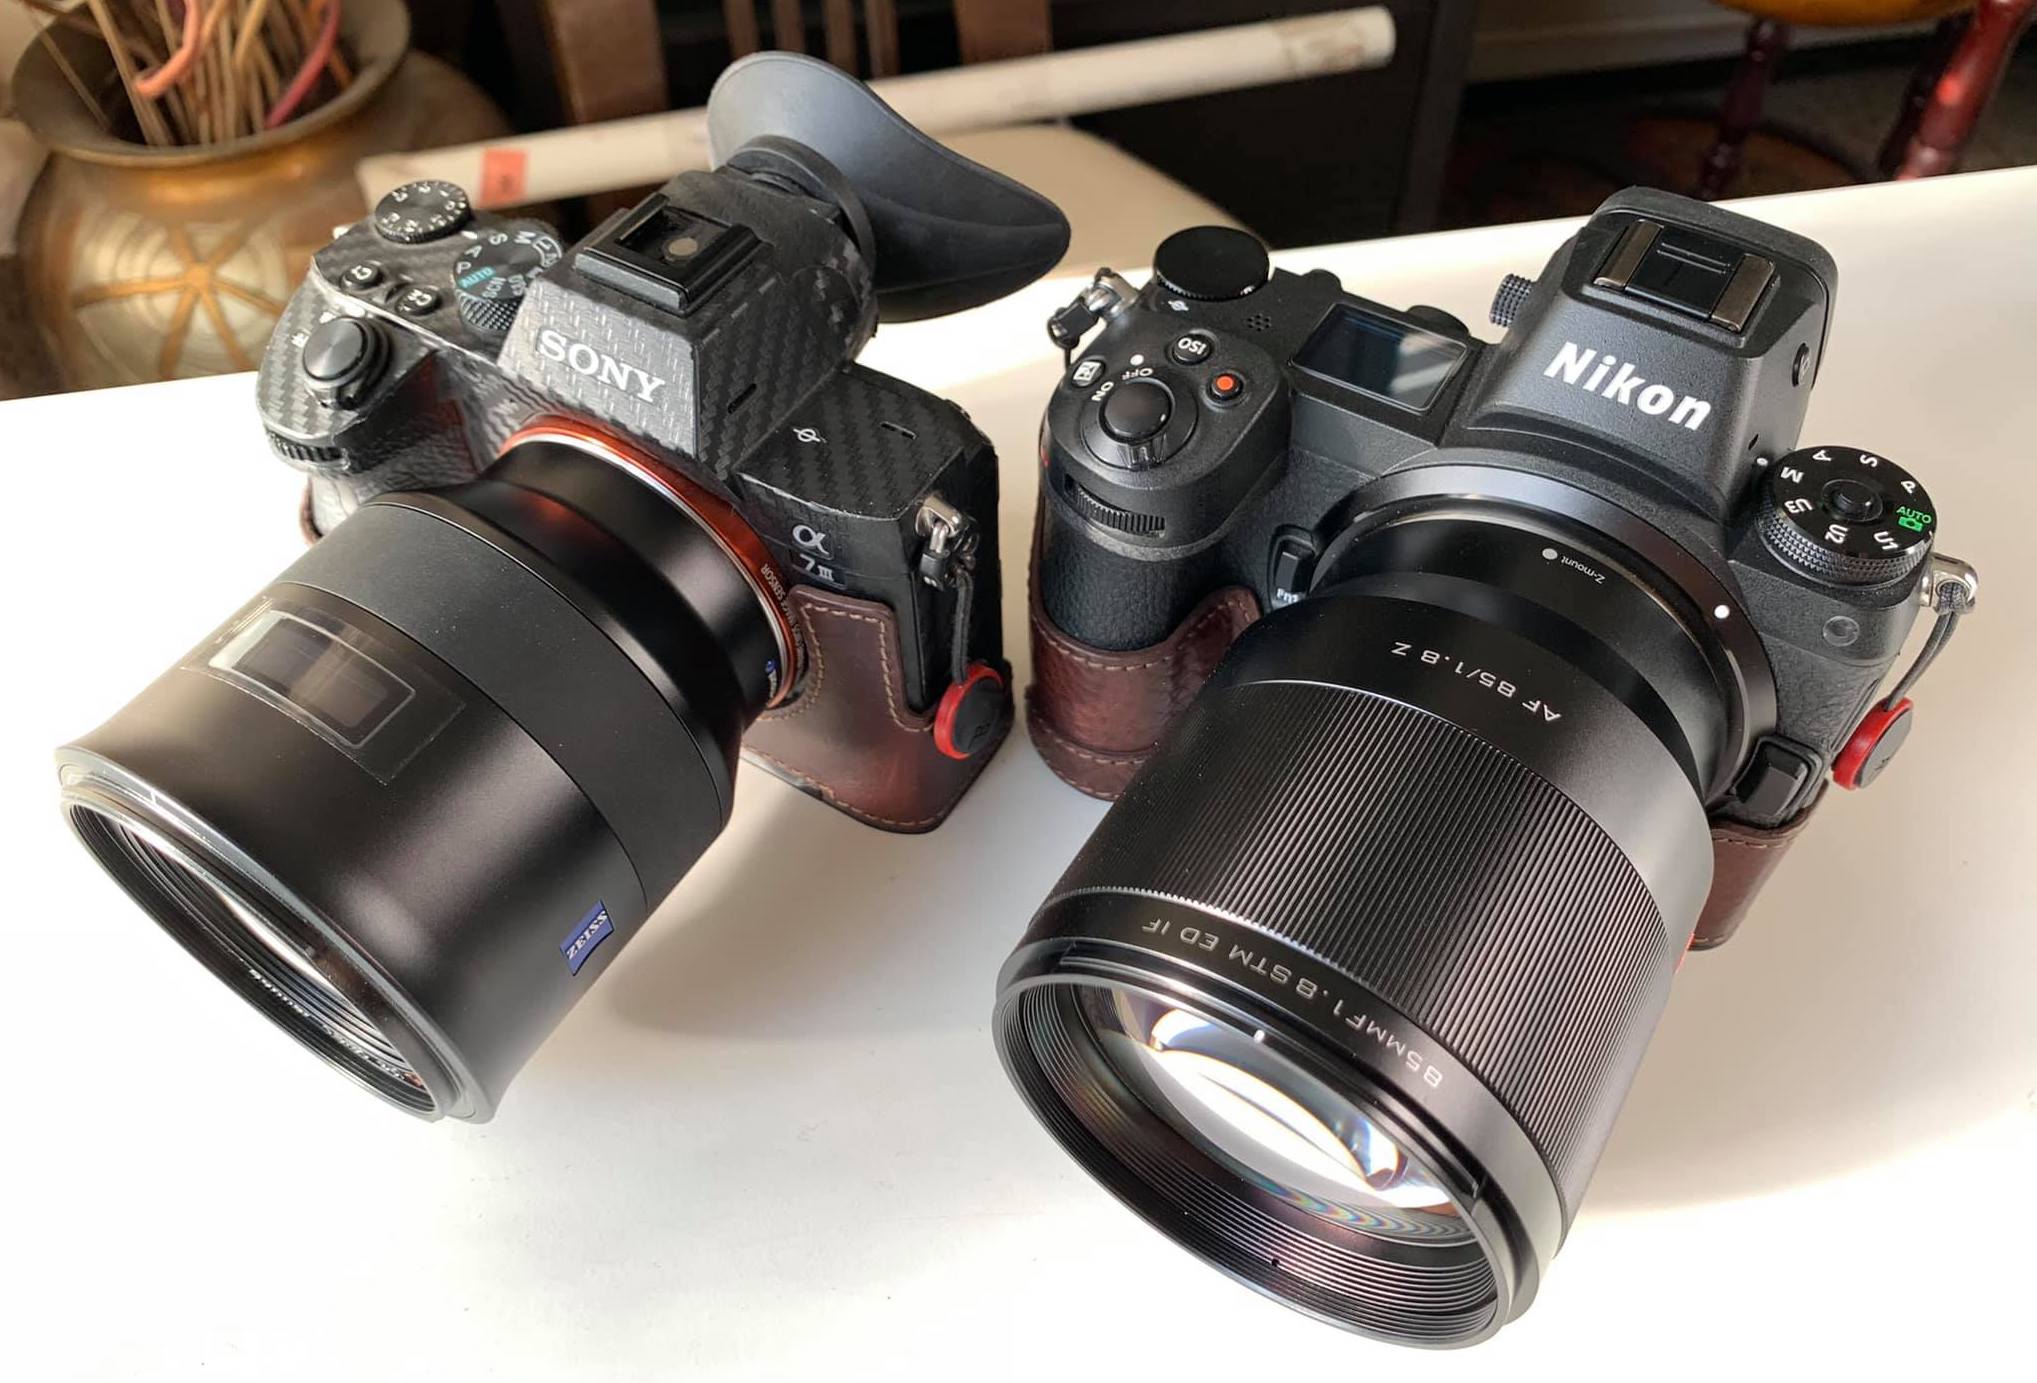 Viltrox 85mm f/1.8 Z AF full-frame lens reviews (+ exclusive 10